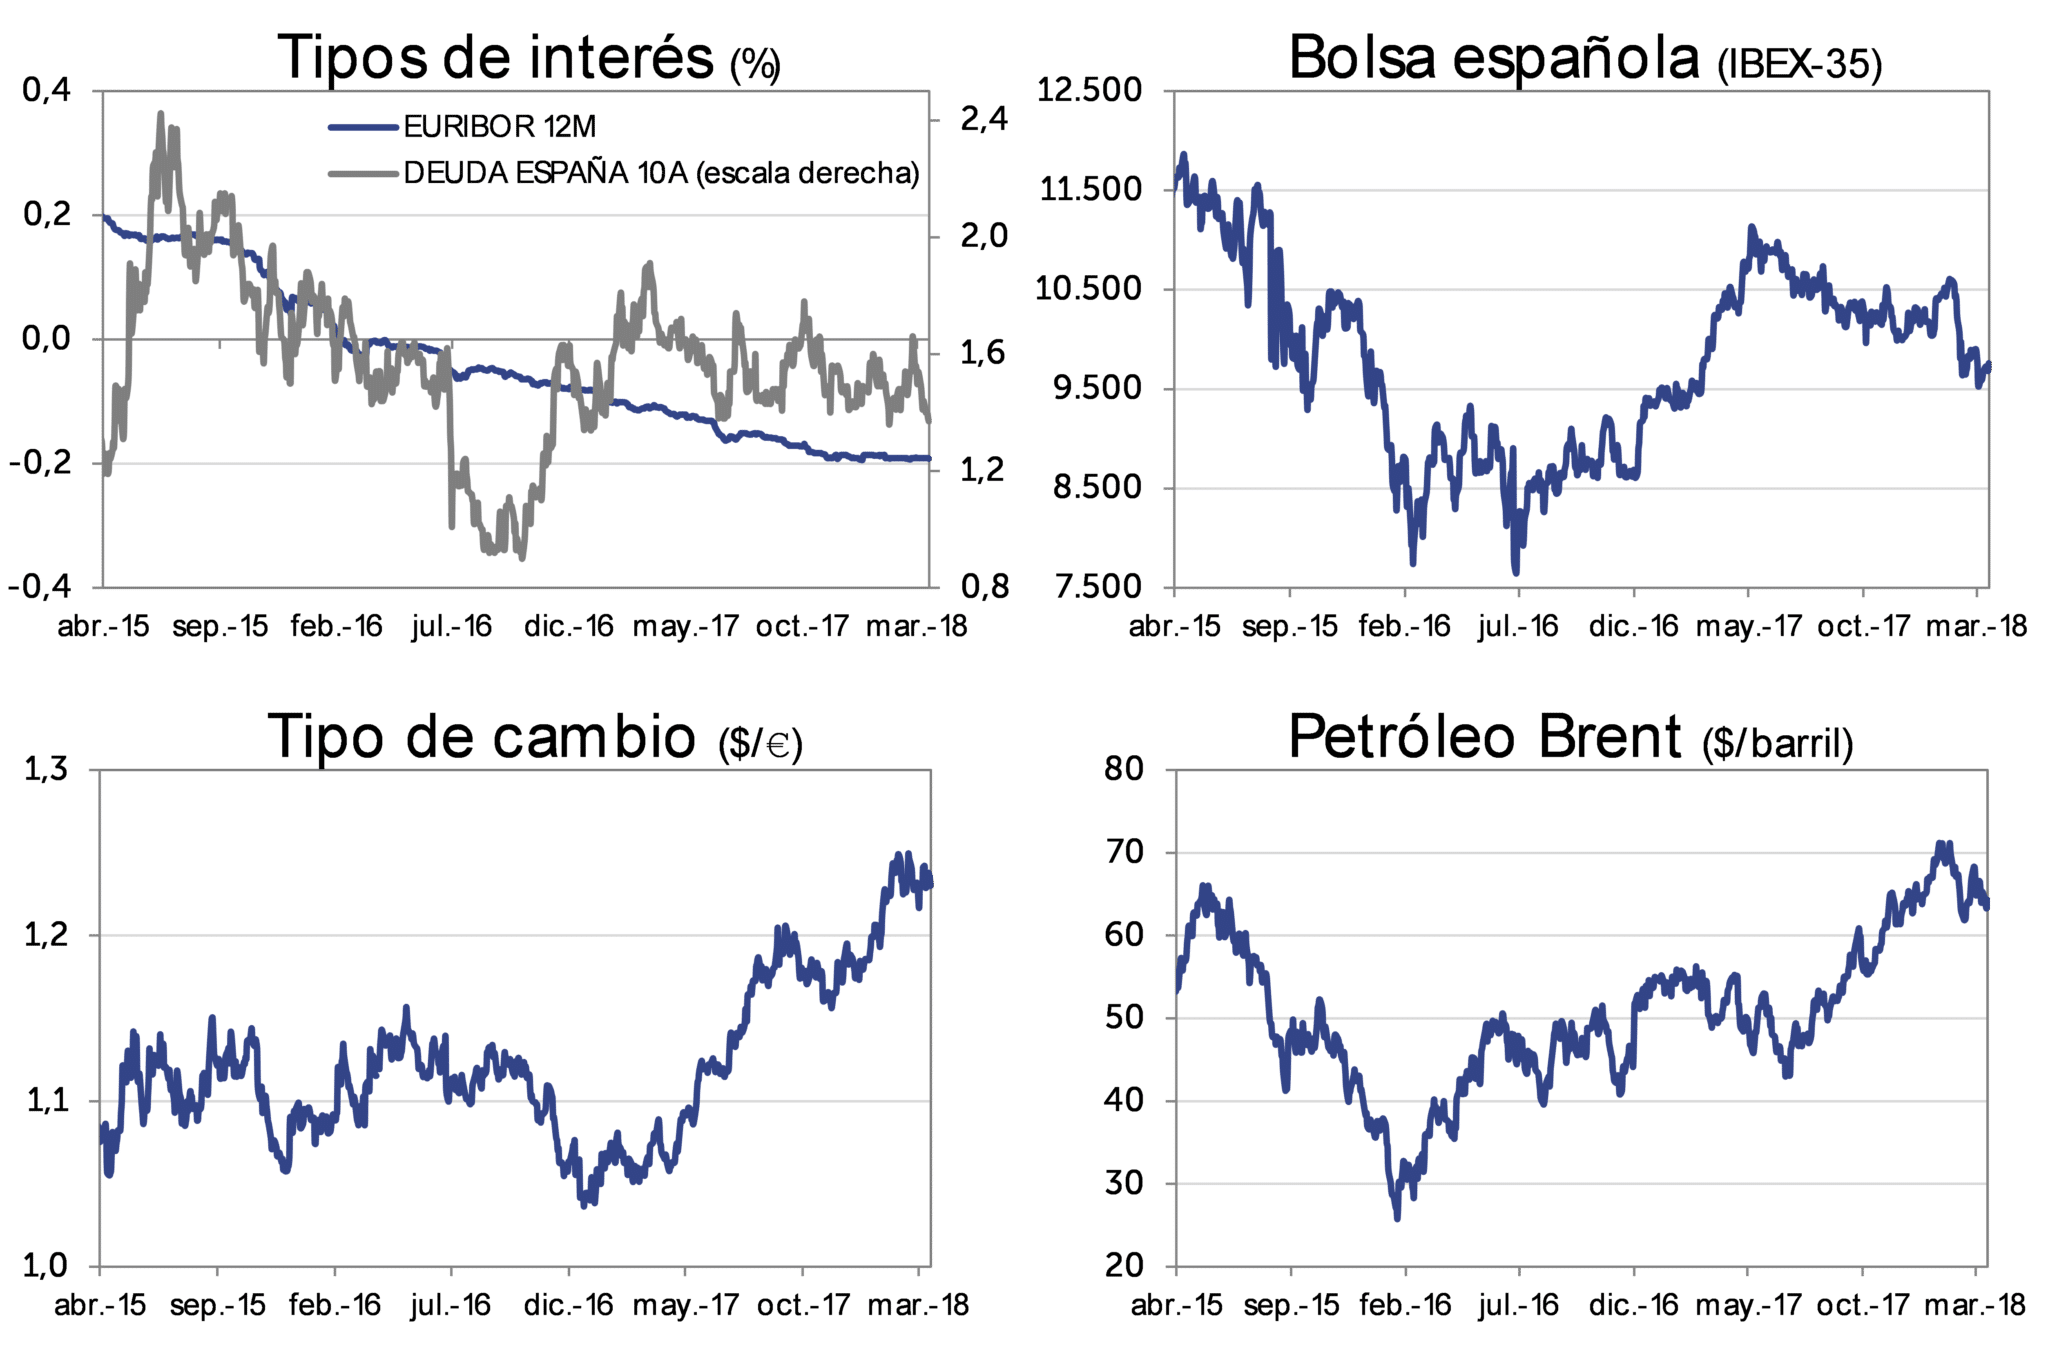 Evolución Mercado marzo-2018: Tipos de interés, bolsa española (IBEX-35), Tipo de cambio (dolar/euro), Petróleo Brent (dolar/barril)